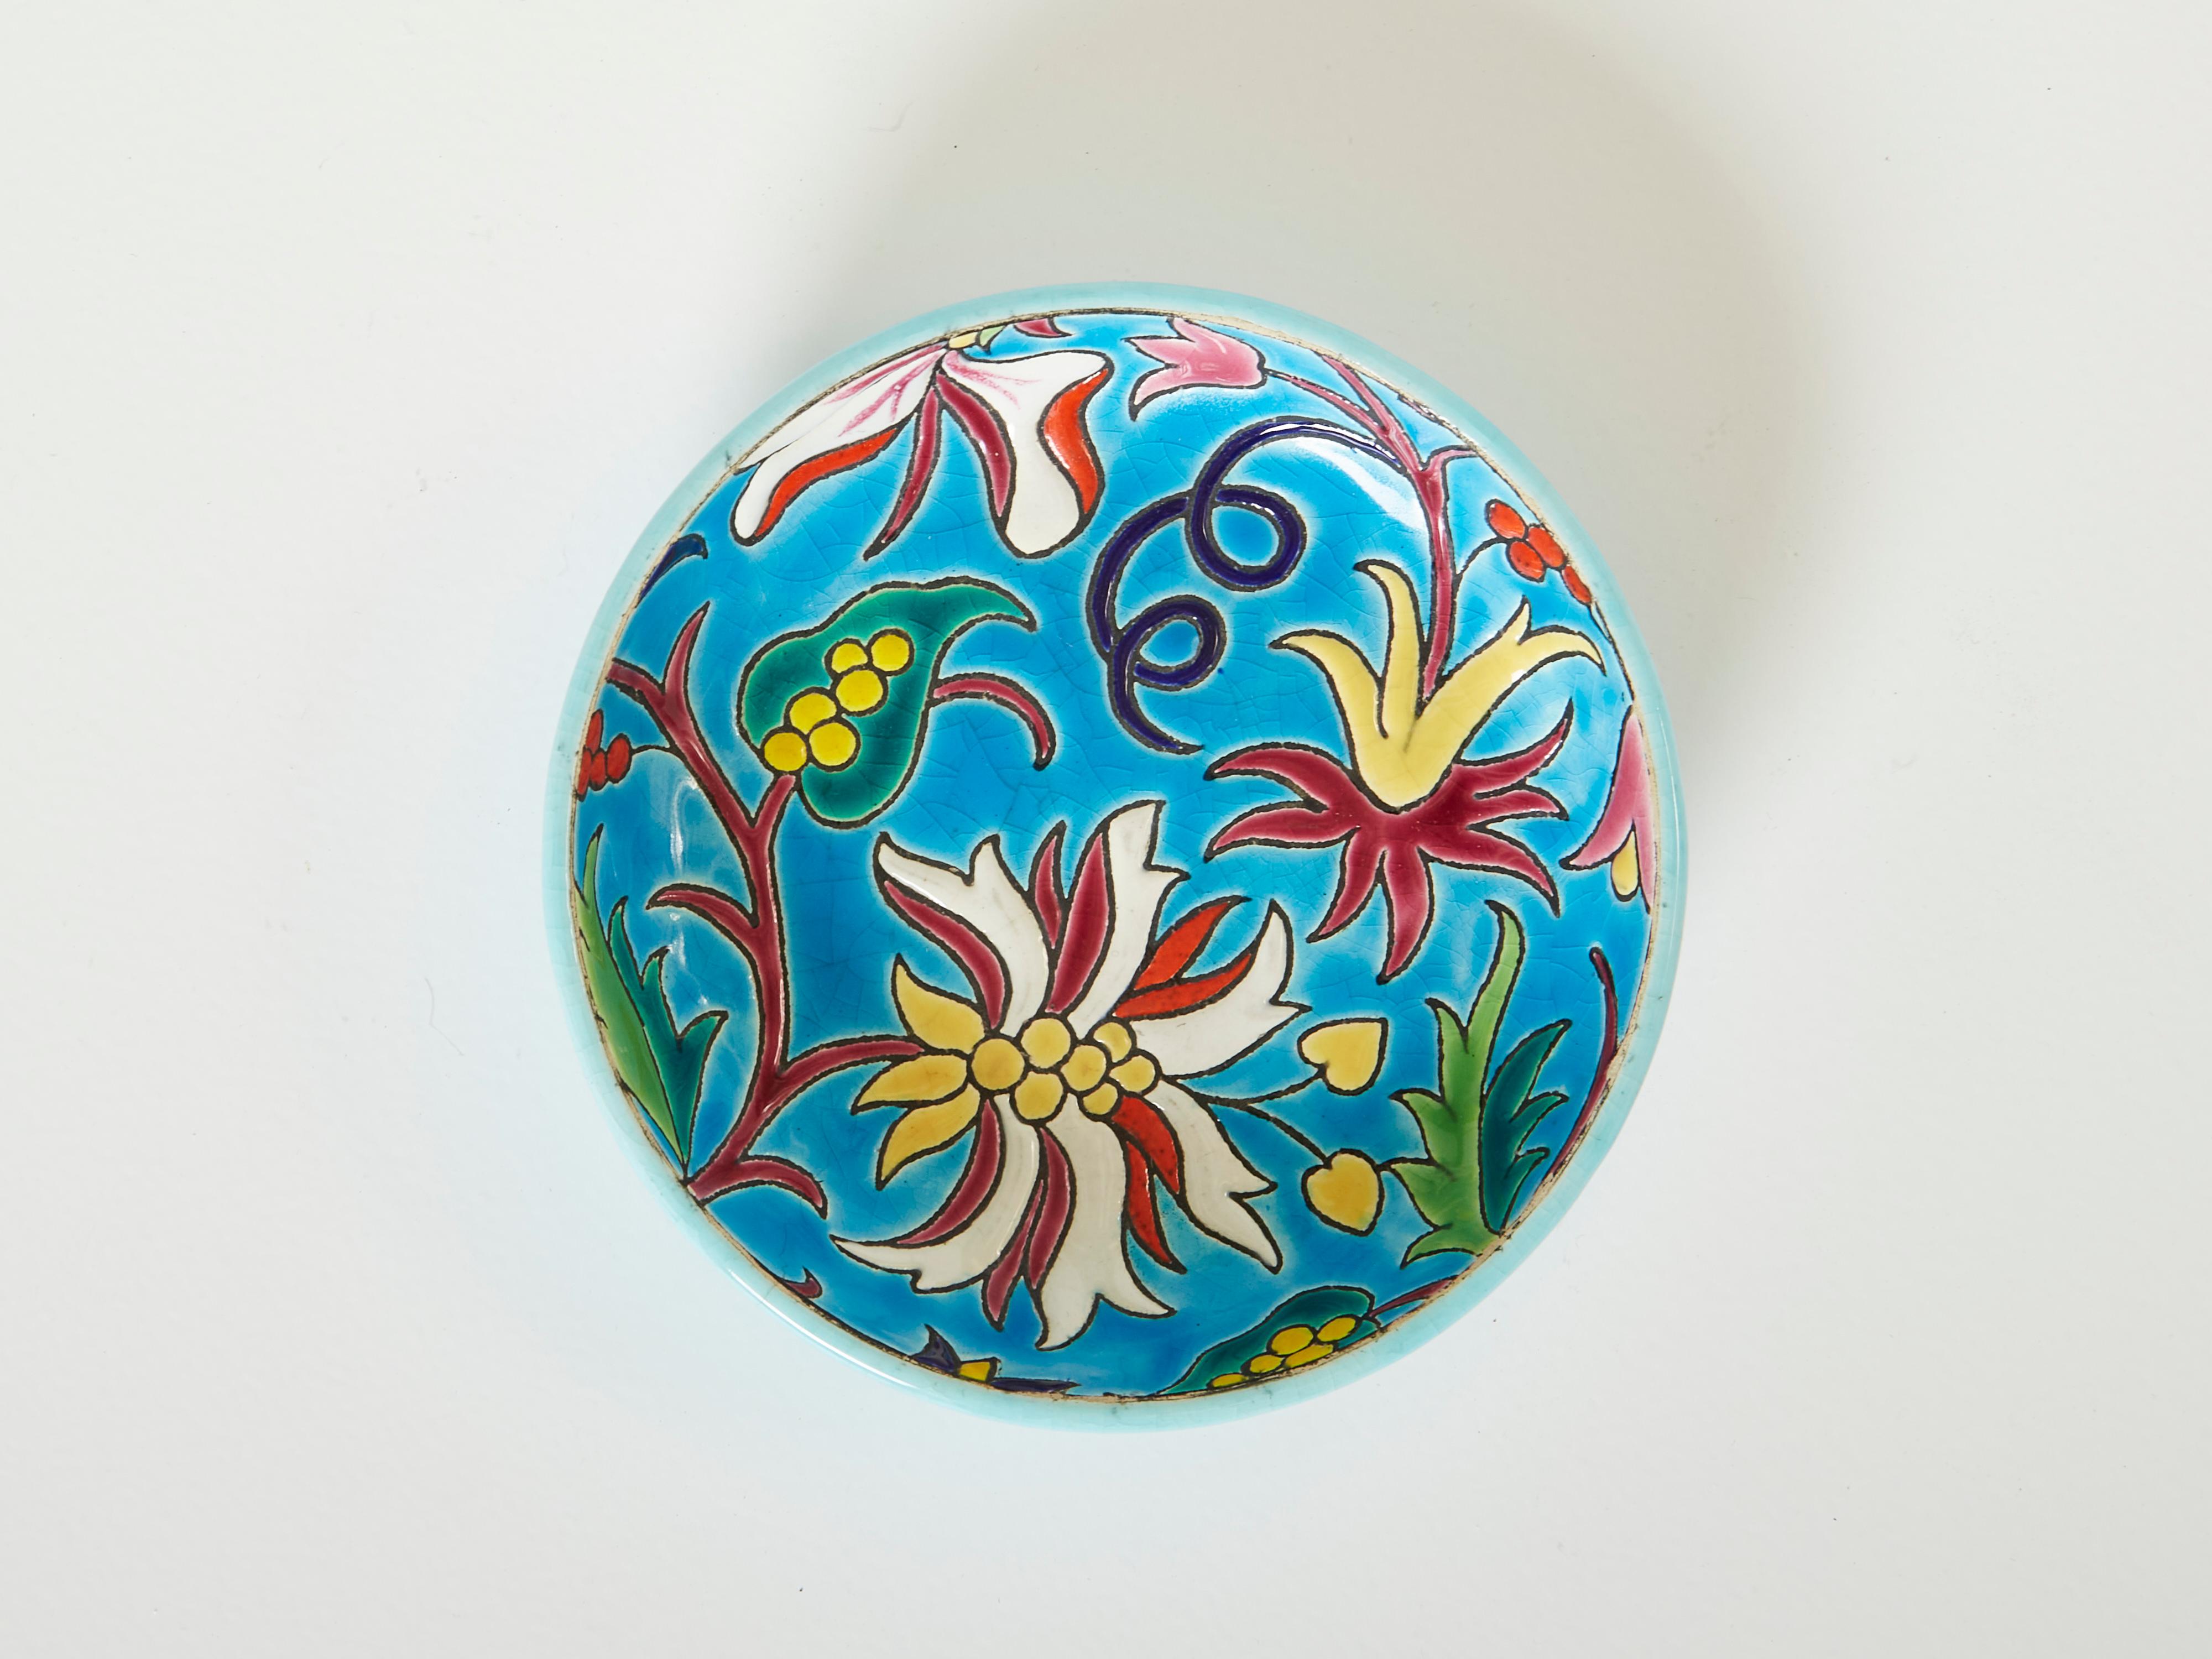 Bol rond coloré en céramique Art Déco par Faïenceries et Emaux de Longwy, fabriqué vers 1950. Ce bol bleu turquoise est orné de belles fleurs sur tout le pourtour et de la glaçure craquelée caractéristique de Longwy. La manufacture de Longwy a des